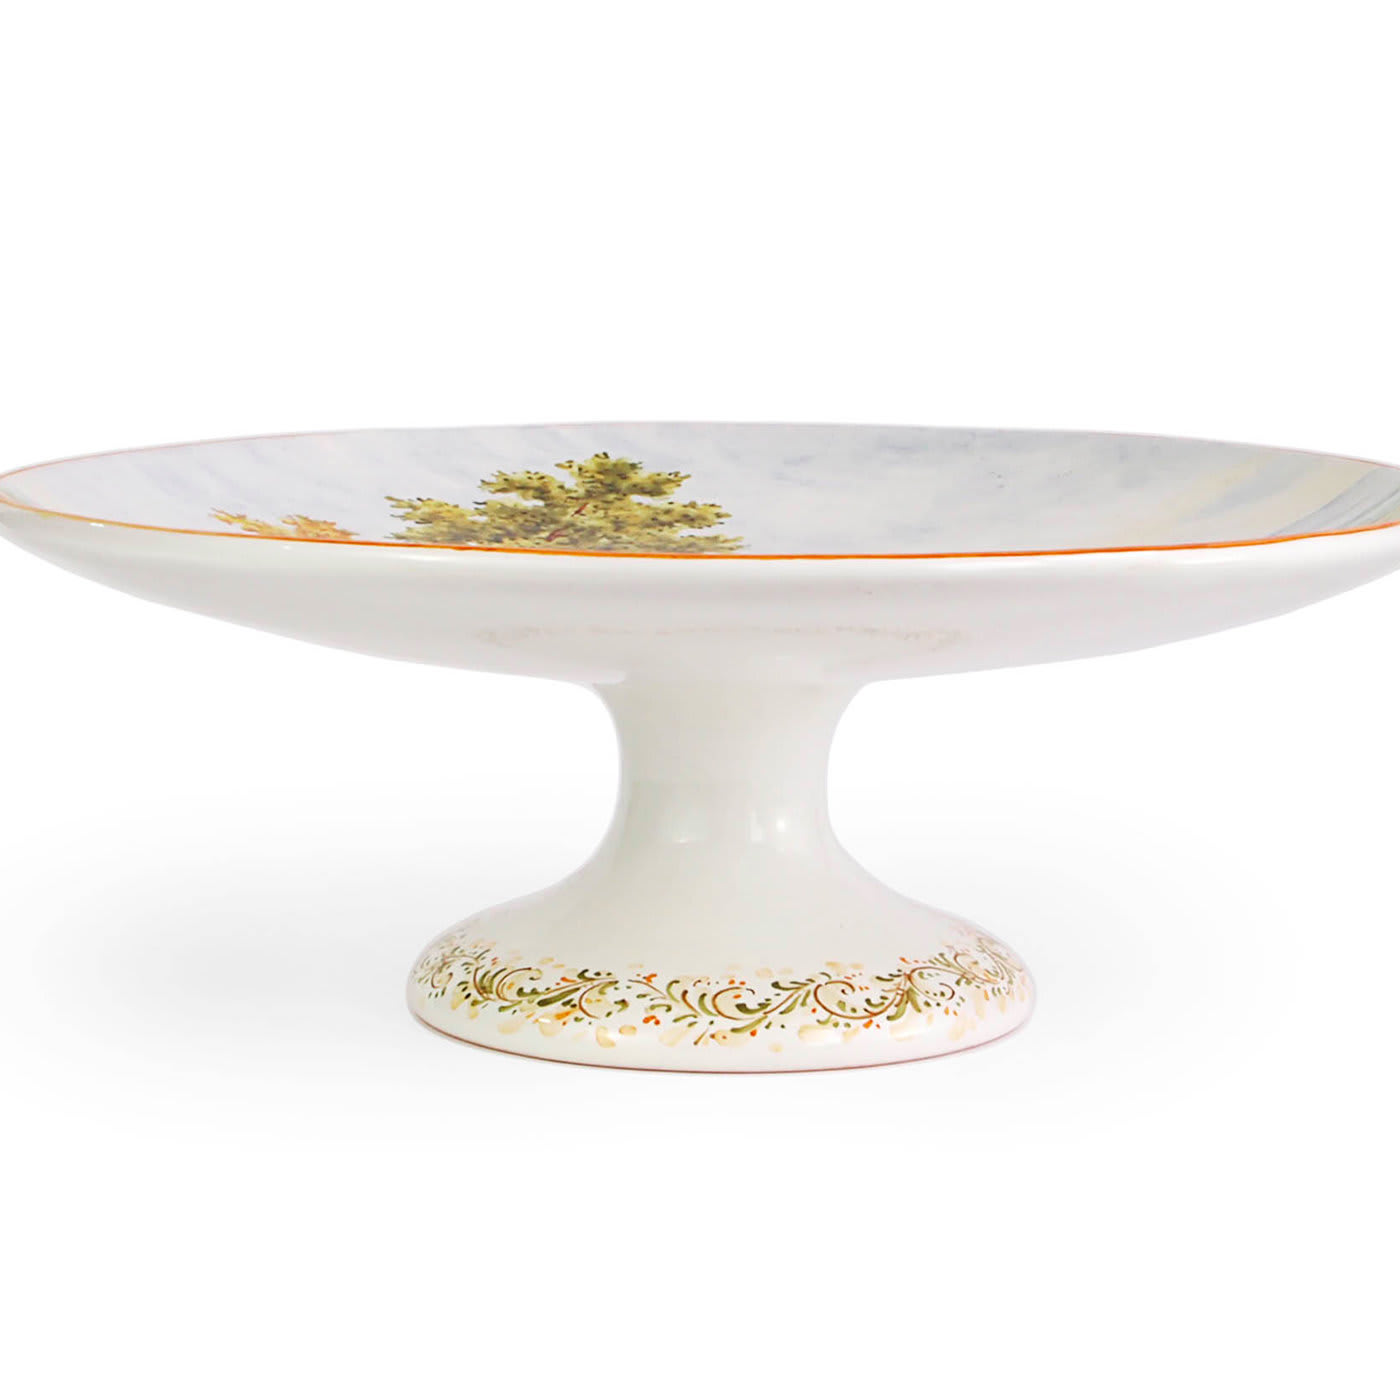 Il Classico Landscape Decorative Plate - Ceramiche Santalucia